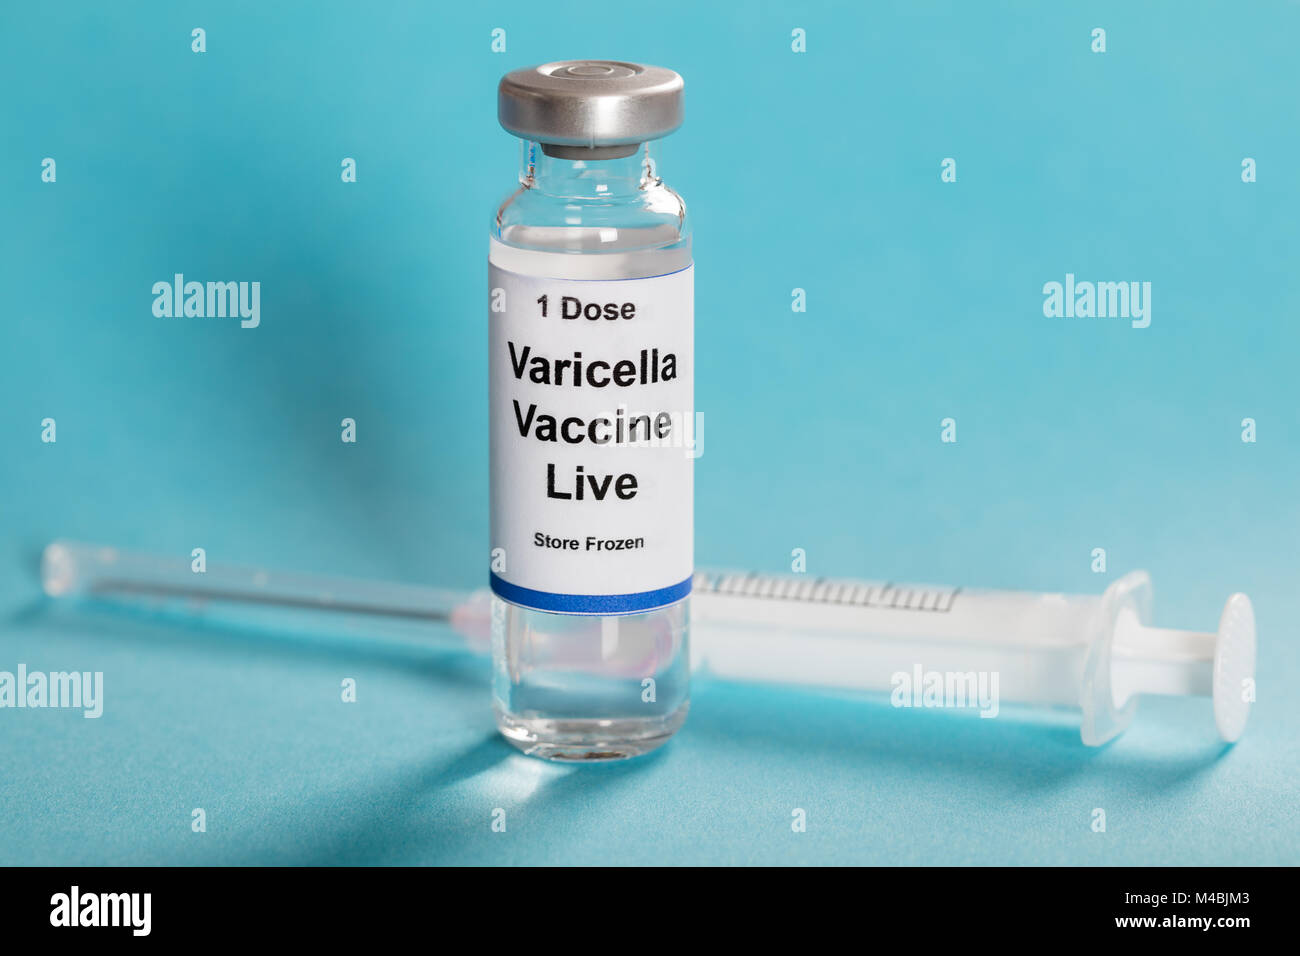 Оспа вакцина купить. Вакцина Варицелла. Натуральная оспа вакцина. Шприц для вакцинации оспы. Вакцина от ветрянки.